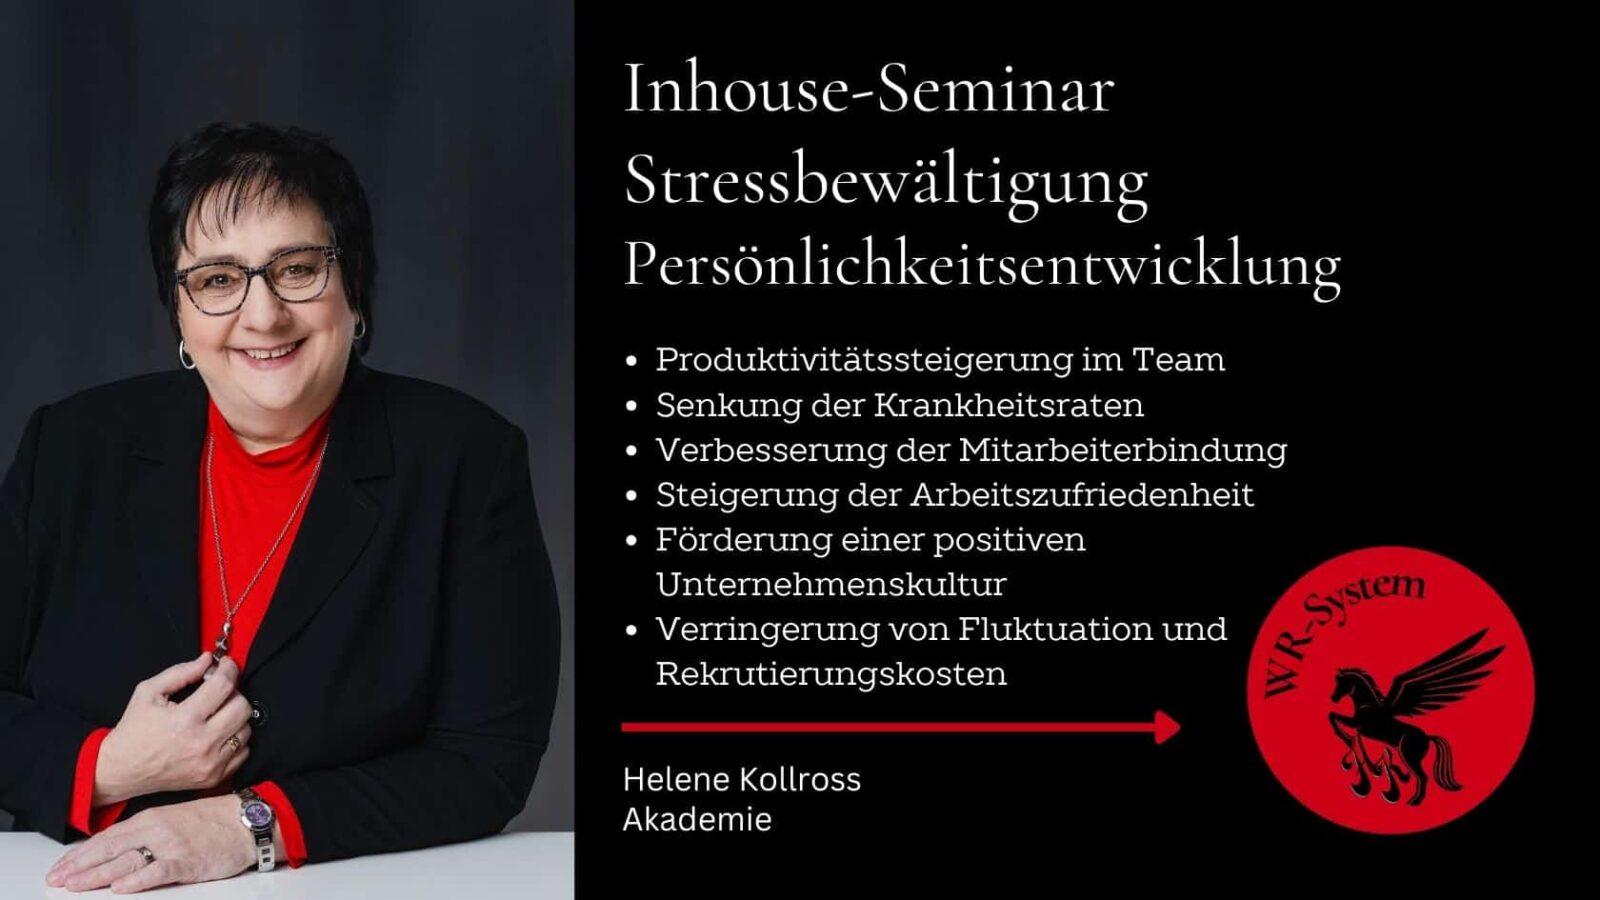 Inhouse-Seminar Stressbewältigung Persönlichkeitsentwicklung Helene Kollross